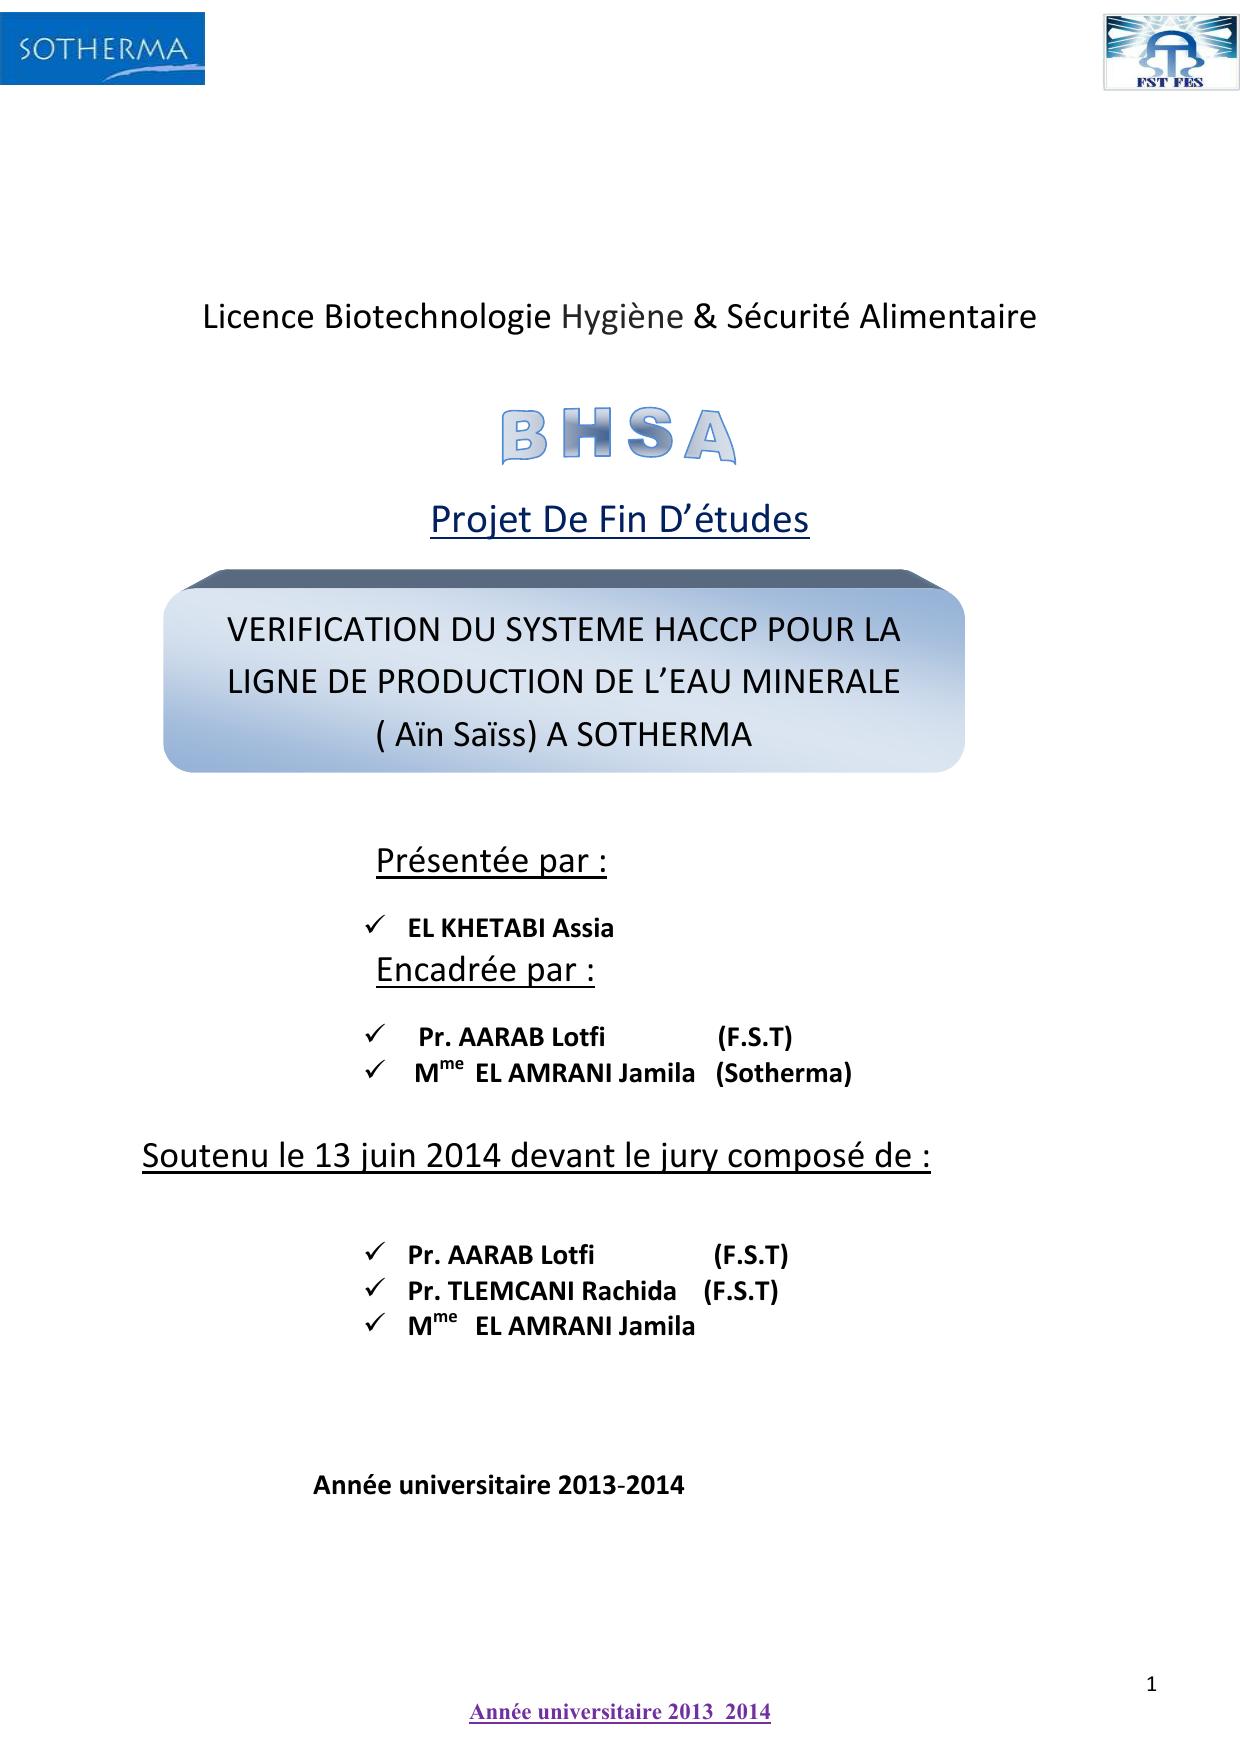 Vérification du système HACCP pour la ligne de production de l'eau minérale (Ain Sais) à SOTHERMA